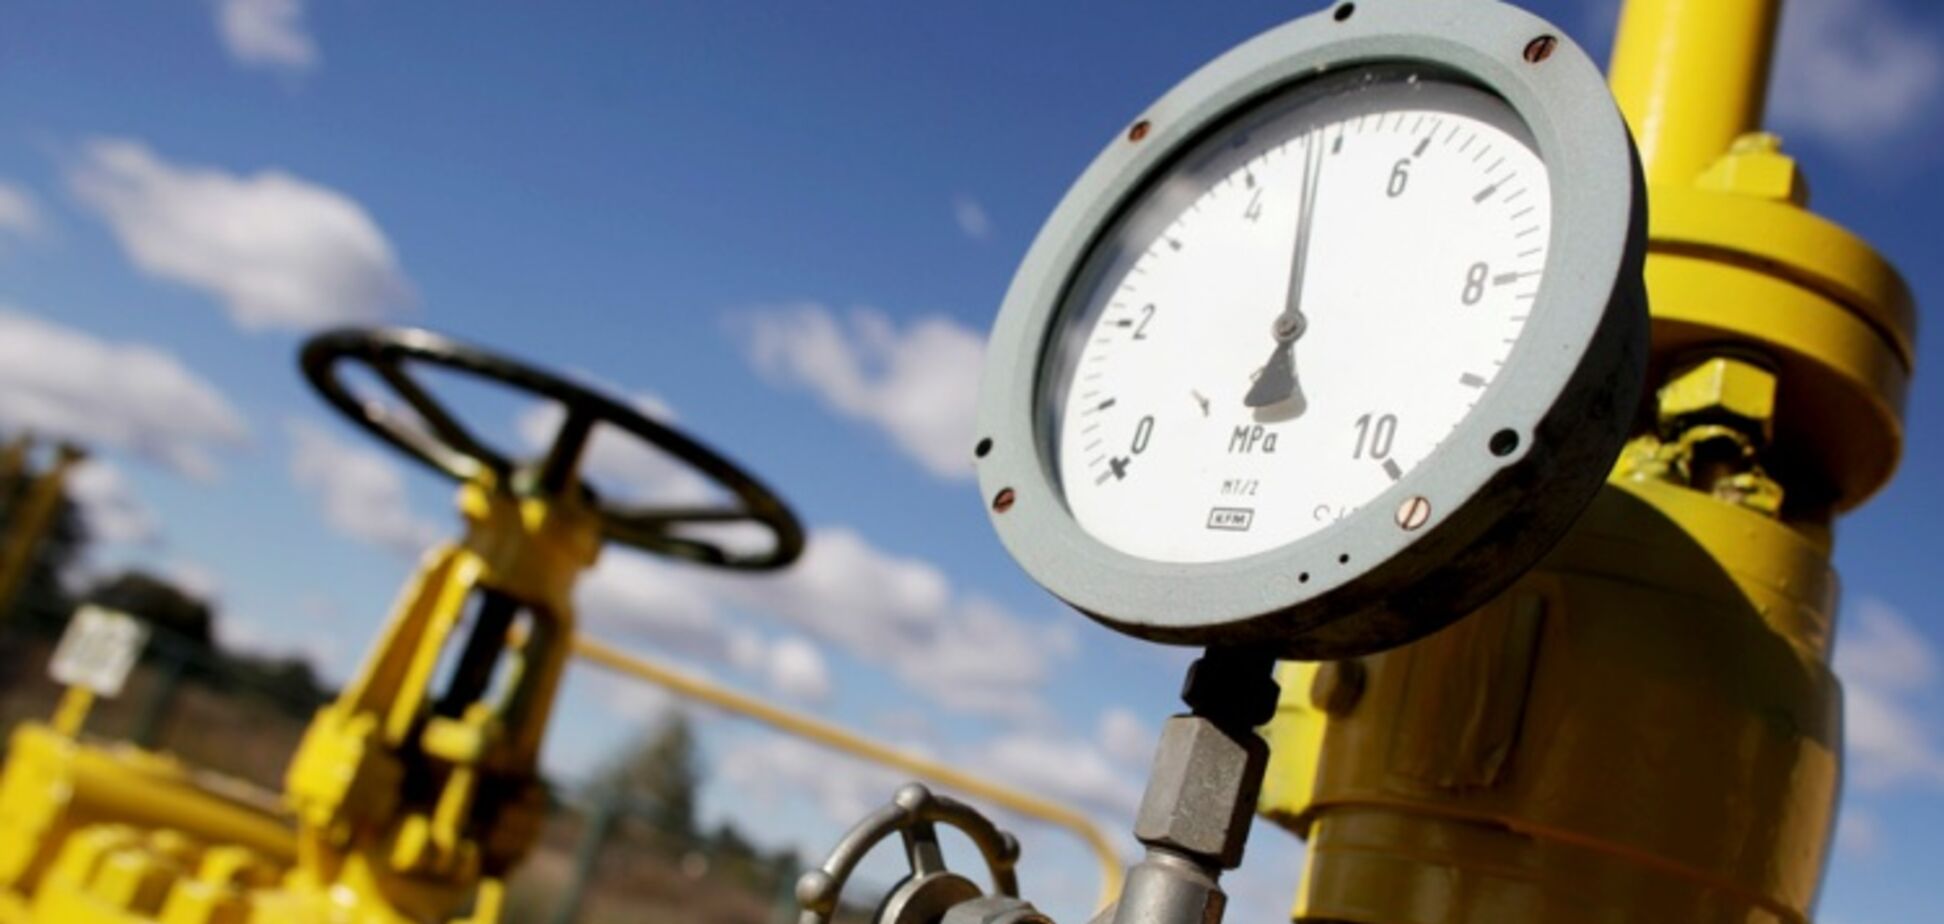 Ще одна перемога: Україна не буде платити 'Газпрому' за газ для 'Л/ДНР'